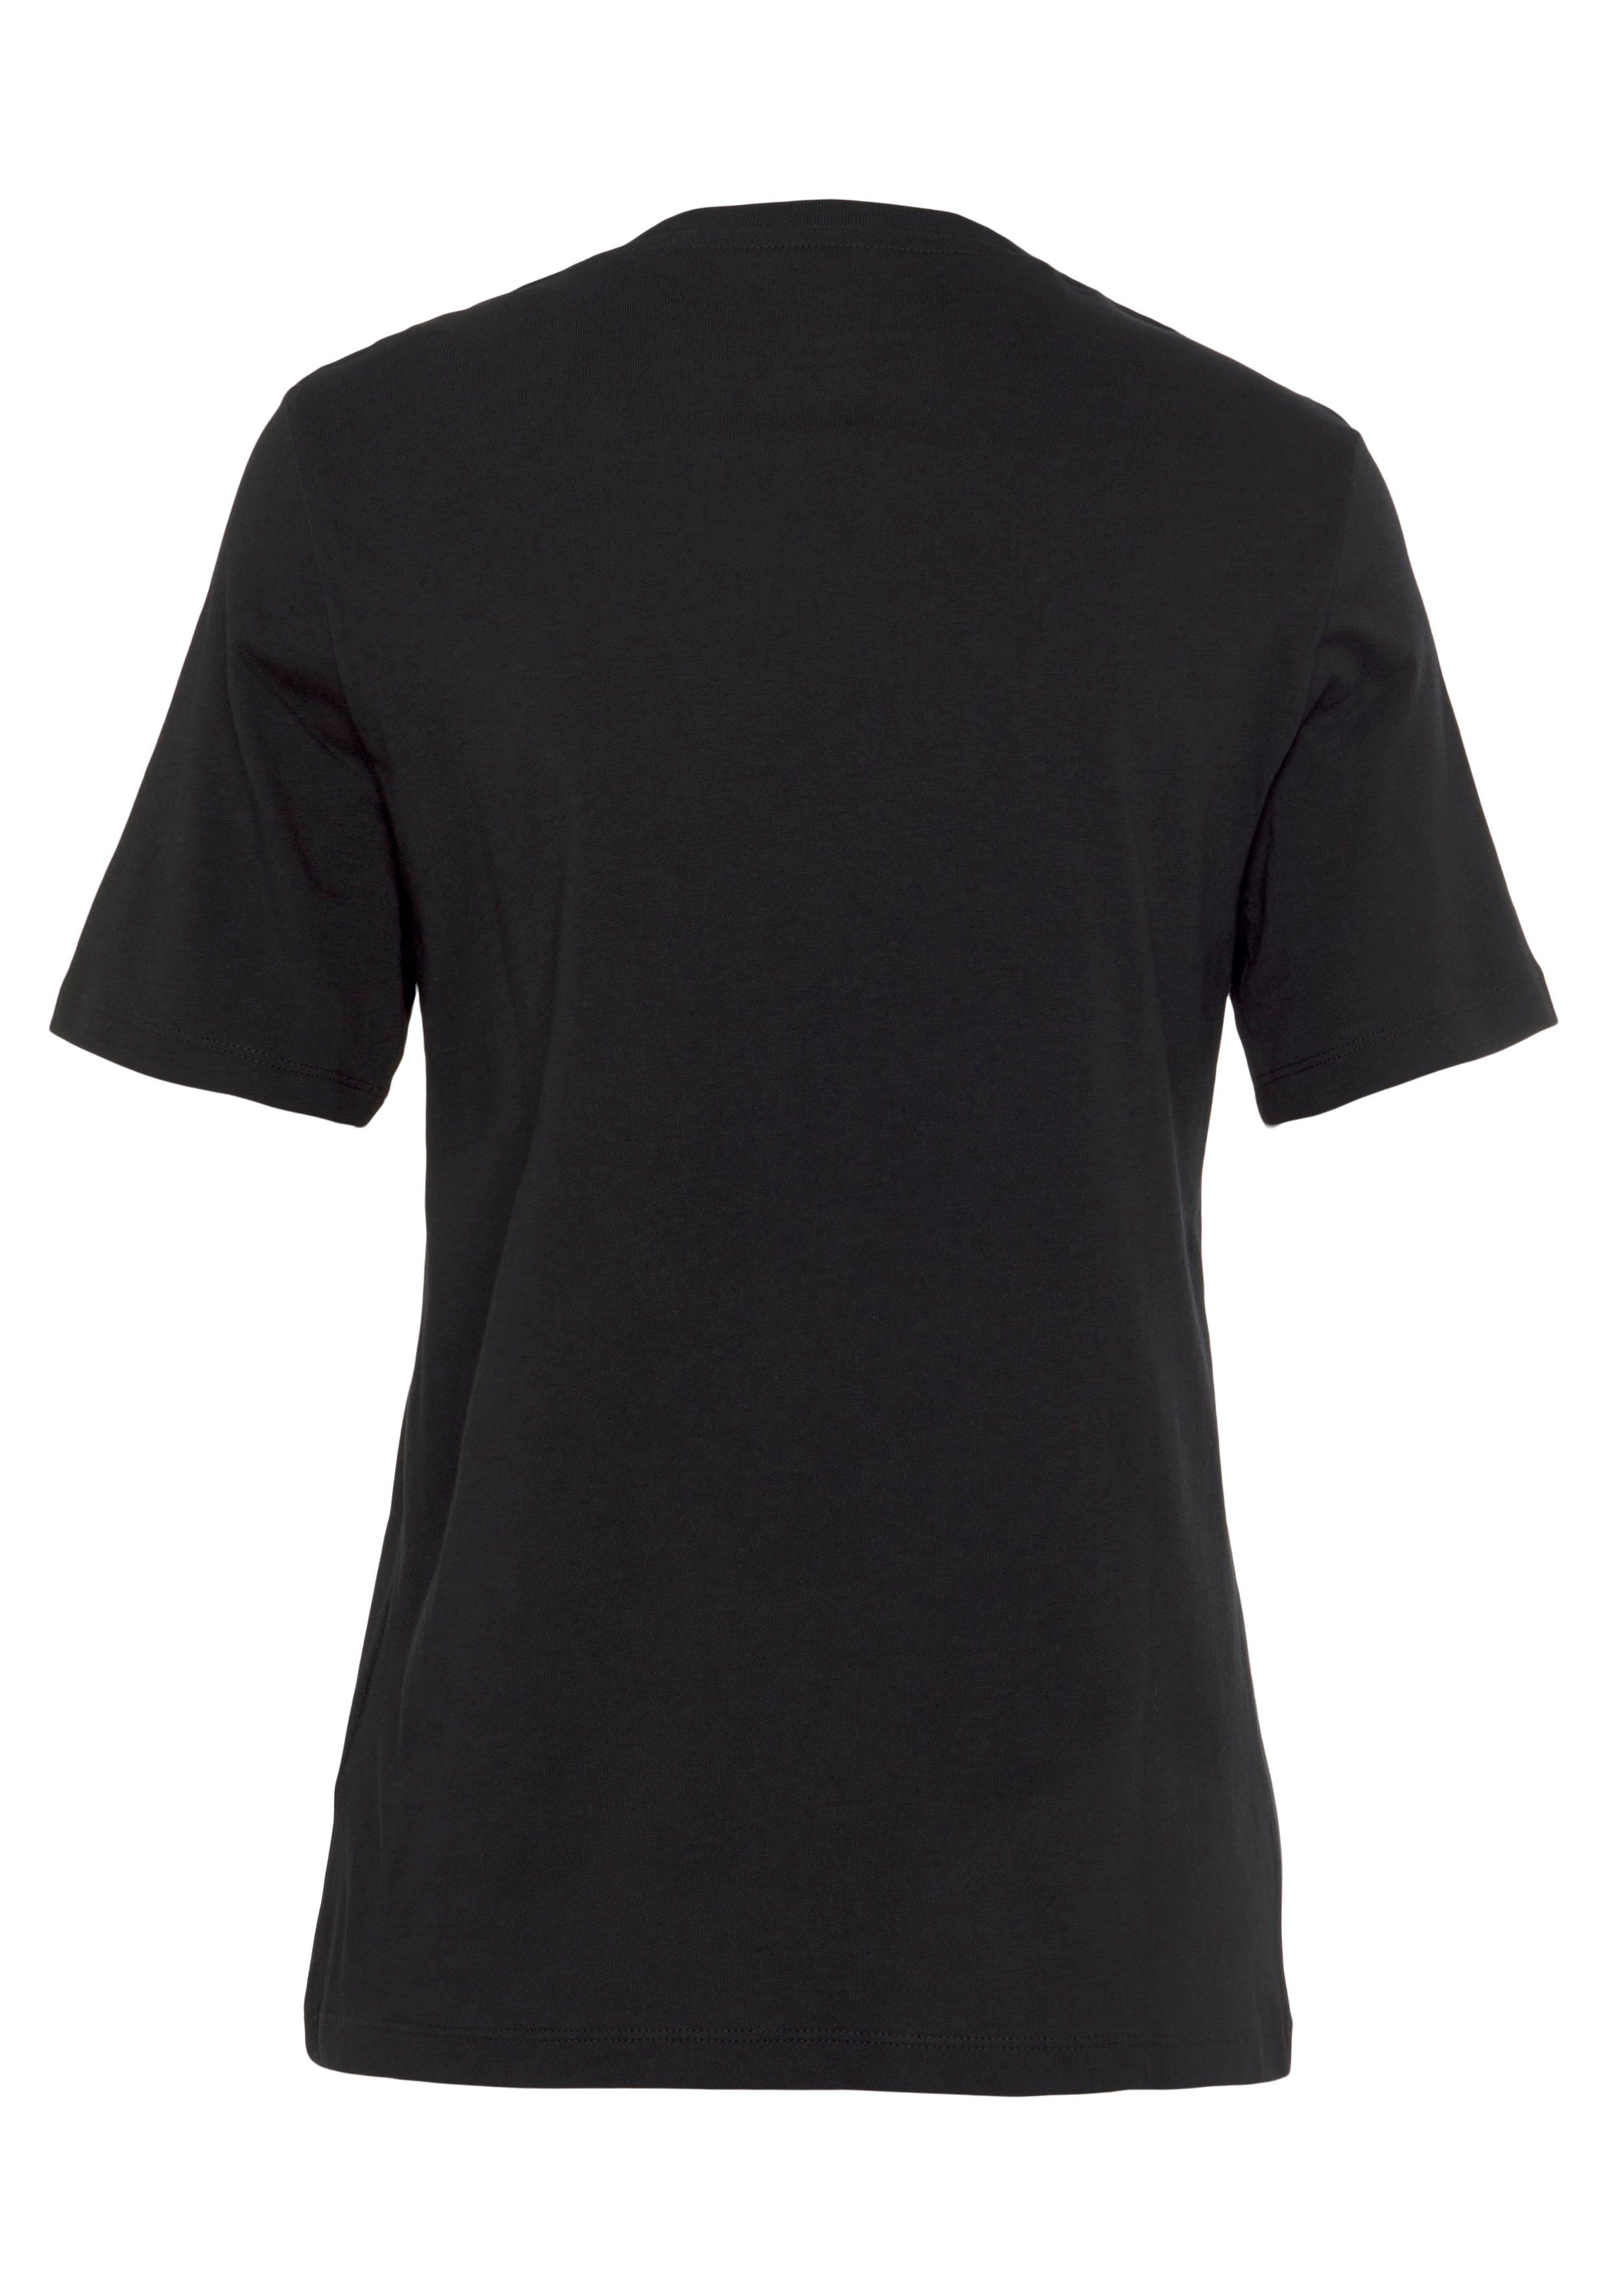 Reebok Tee BL RI T-Shirt black